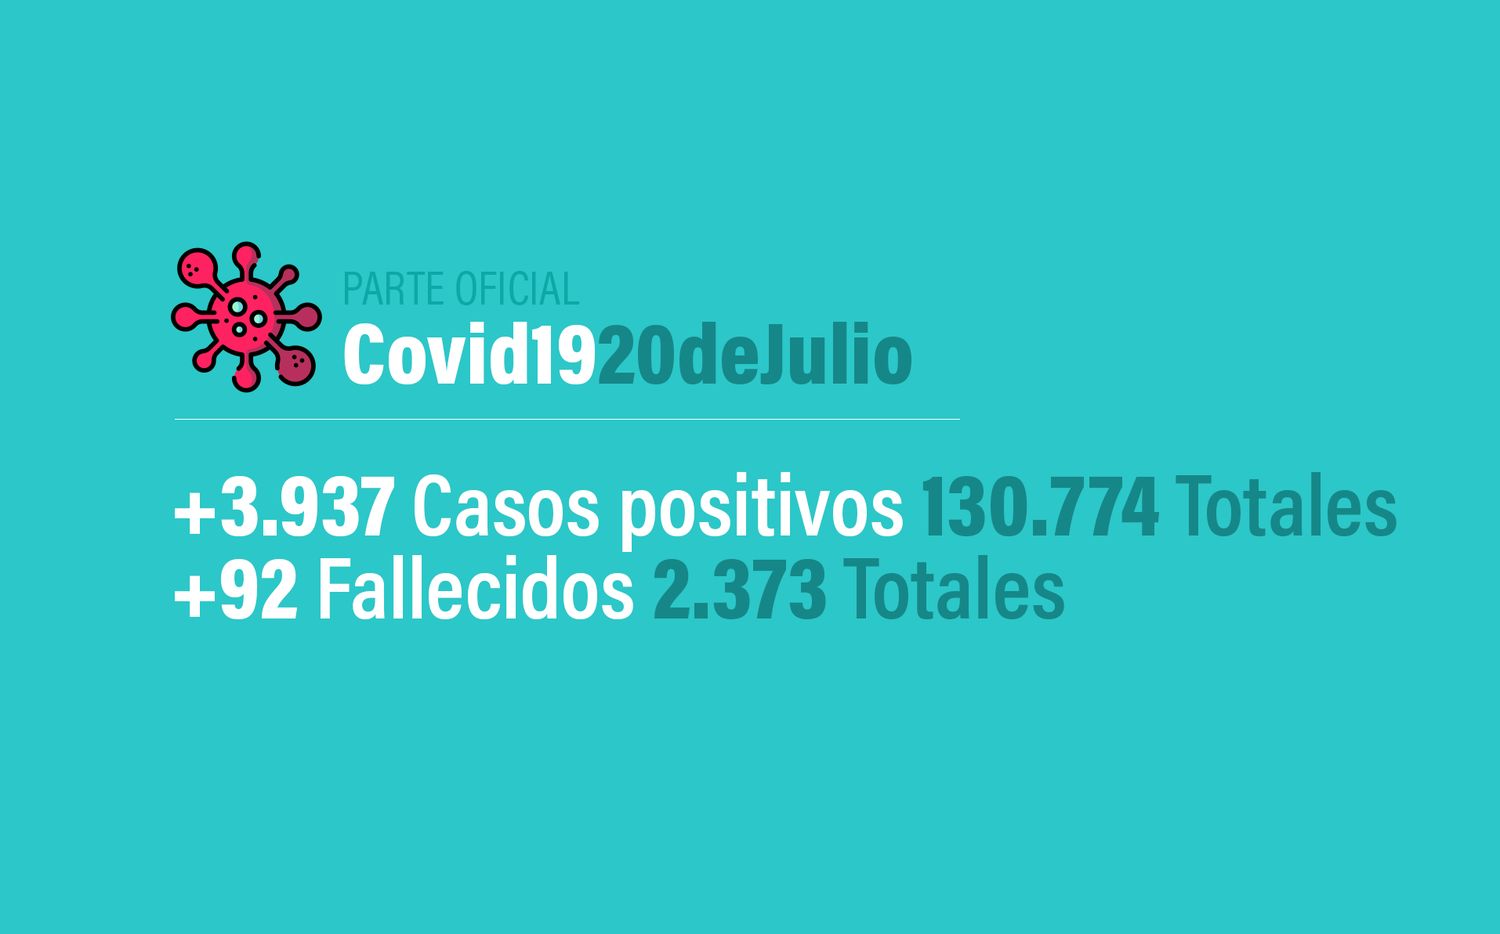 Coronavirus en Argentina: 3937 nuevos casos, 130774 confirmados, 55913 recuperados y 2373 muertes, al 20 de julio